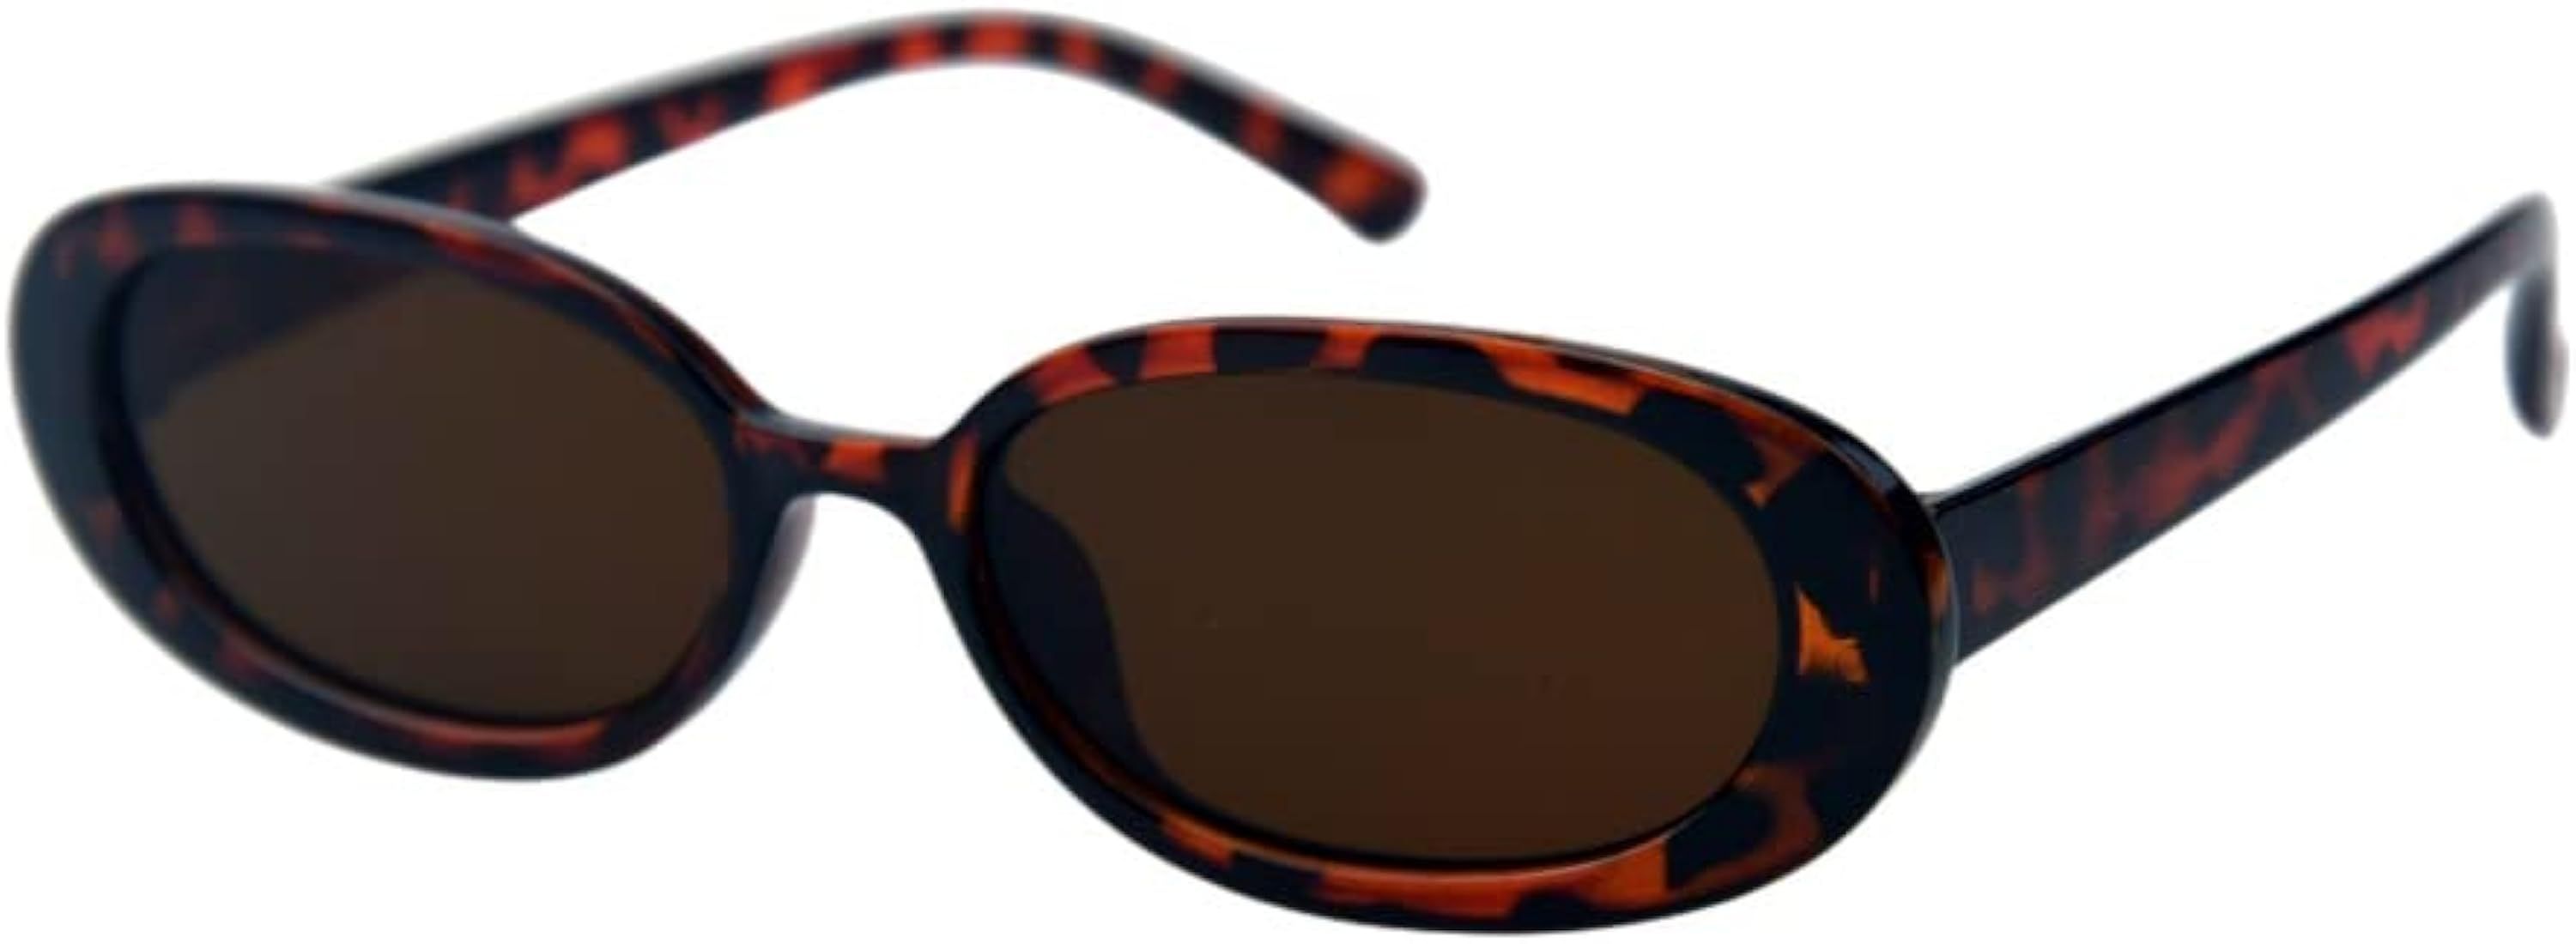 Shiratori Women's Retro Oval Holiday Sunglasses Non-polarized UV400 | Amazon (US)